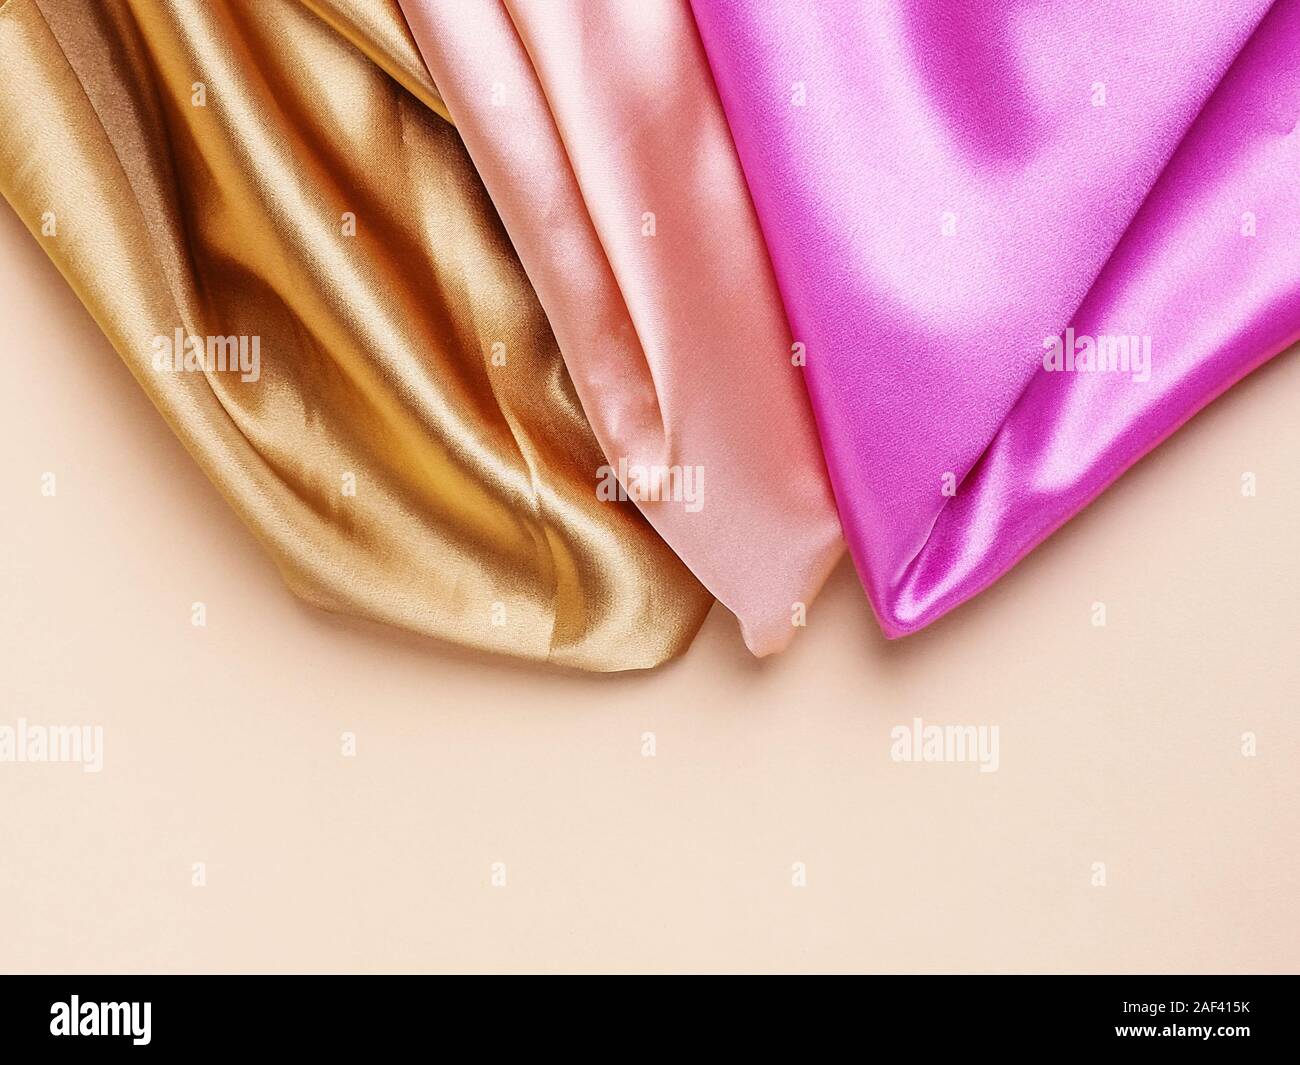 Soie tissu coloré de fond de pile. coupons empilés en gros tas de différentes couleurs rose, argent, jaune et bleu. Des vêtements faits de l'offre v Banque D'Images